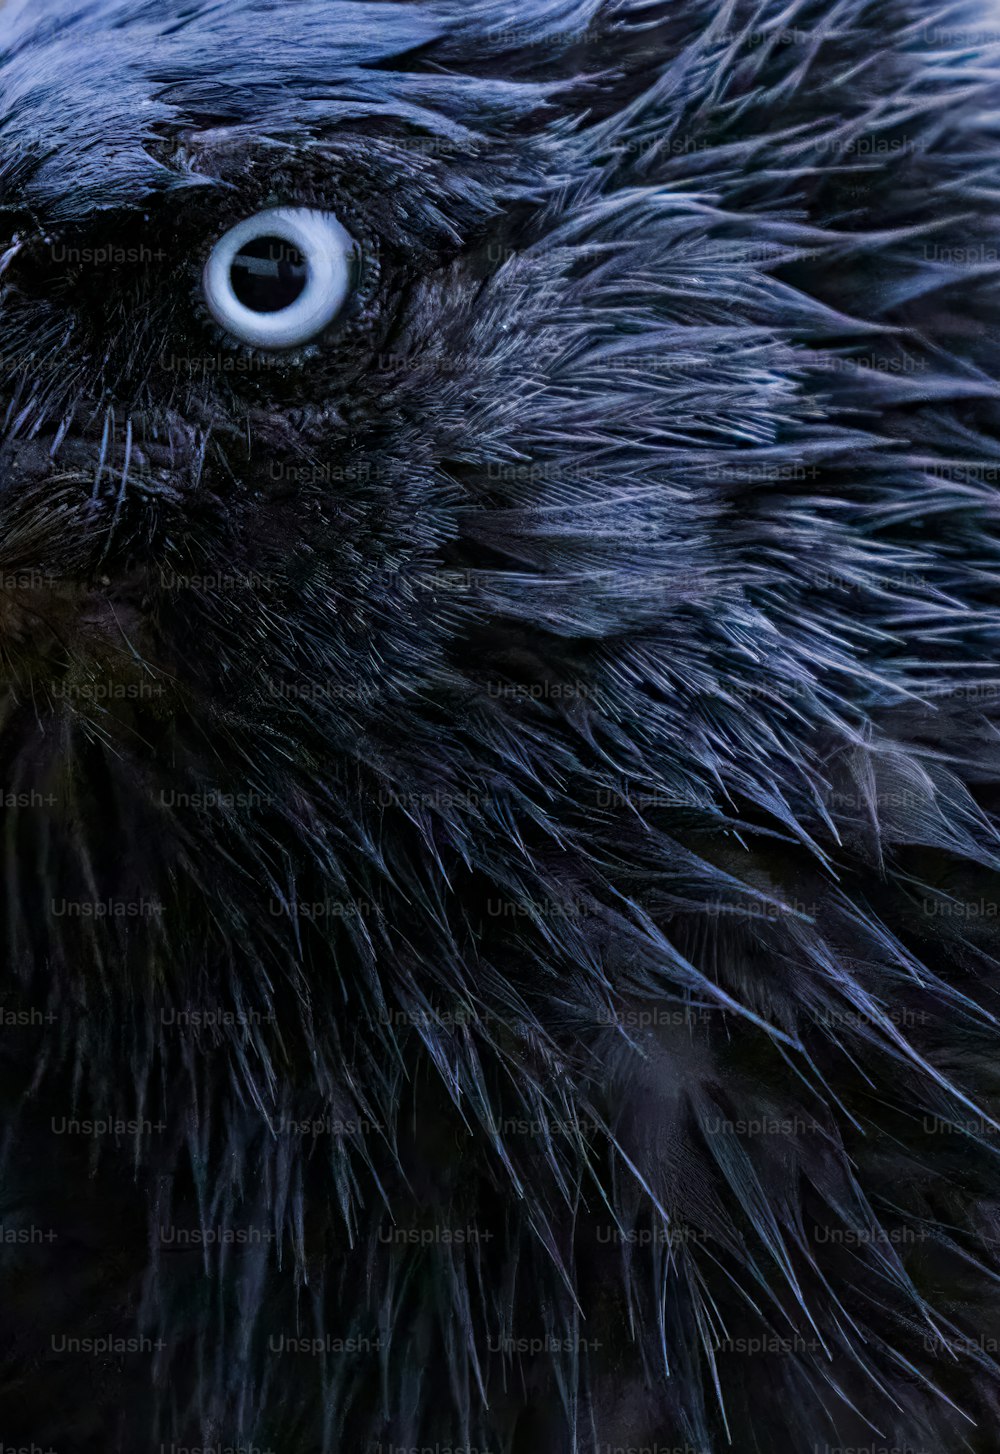 um close up de um pássaro preto com olhos muito grandes